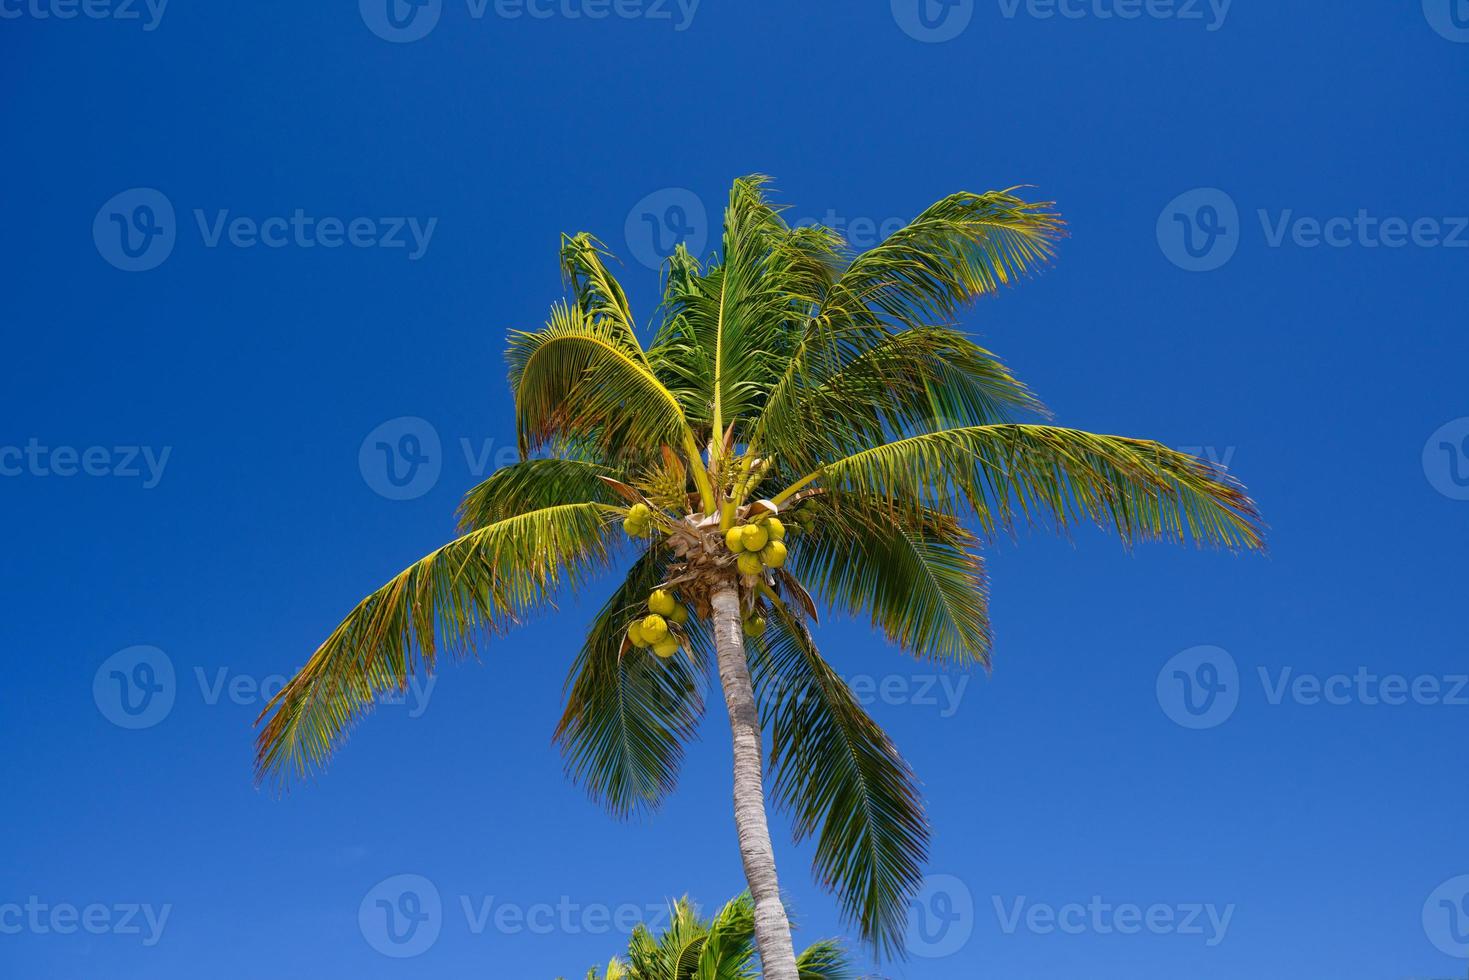 palma de coco con nueces de coco en playa del carmen, méxico foto